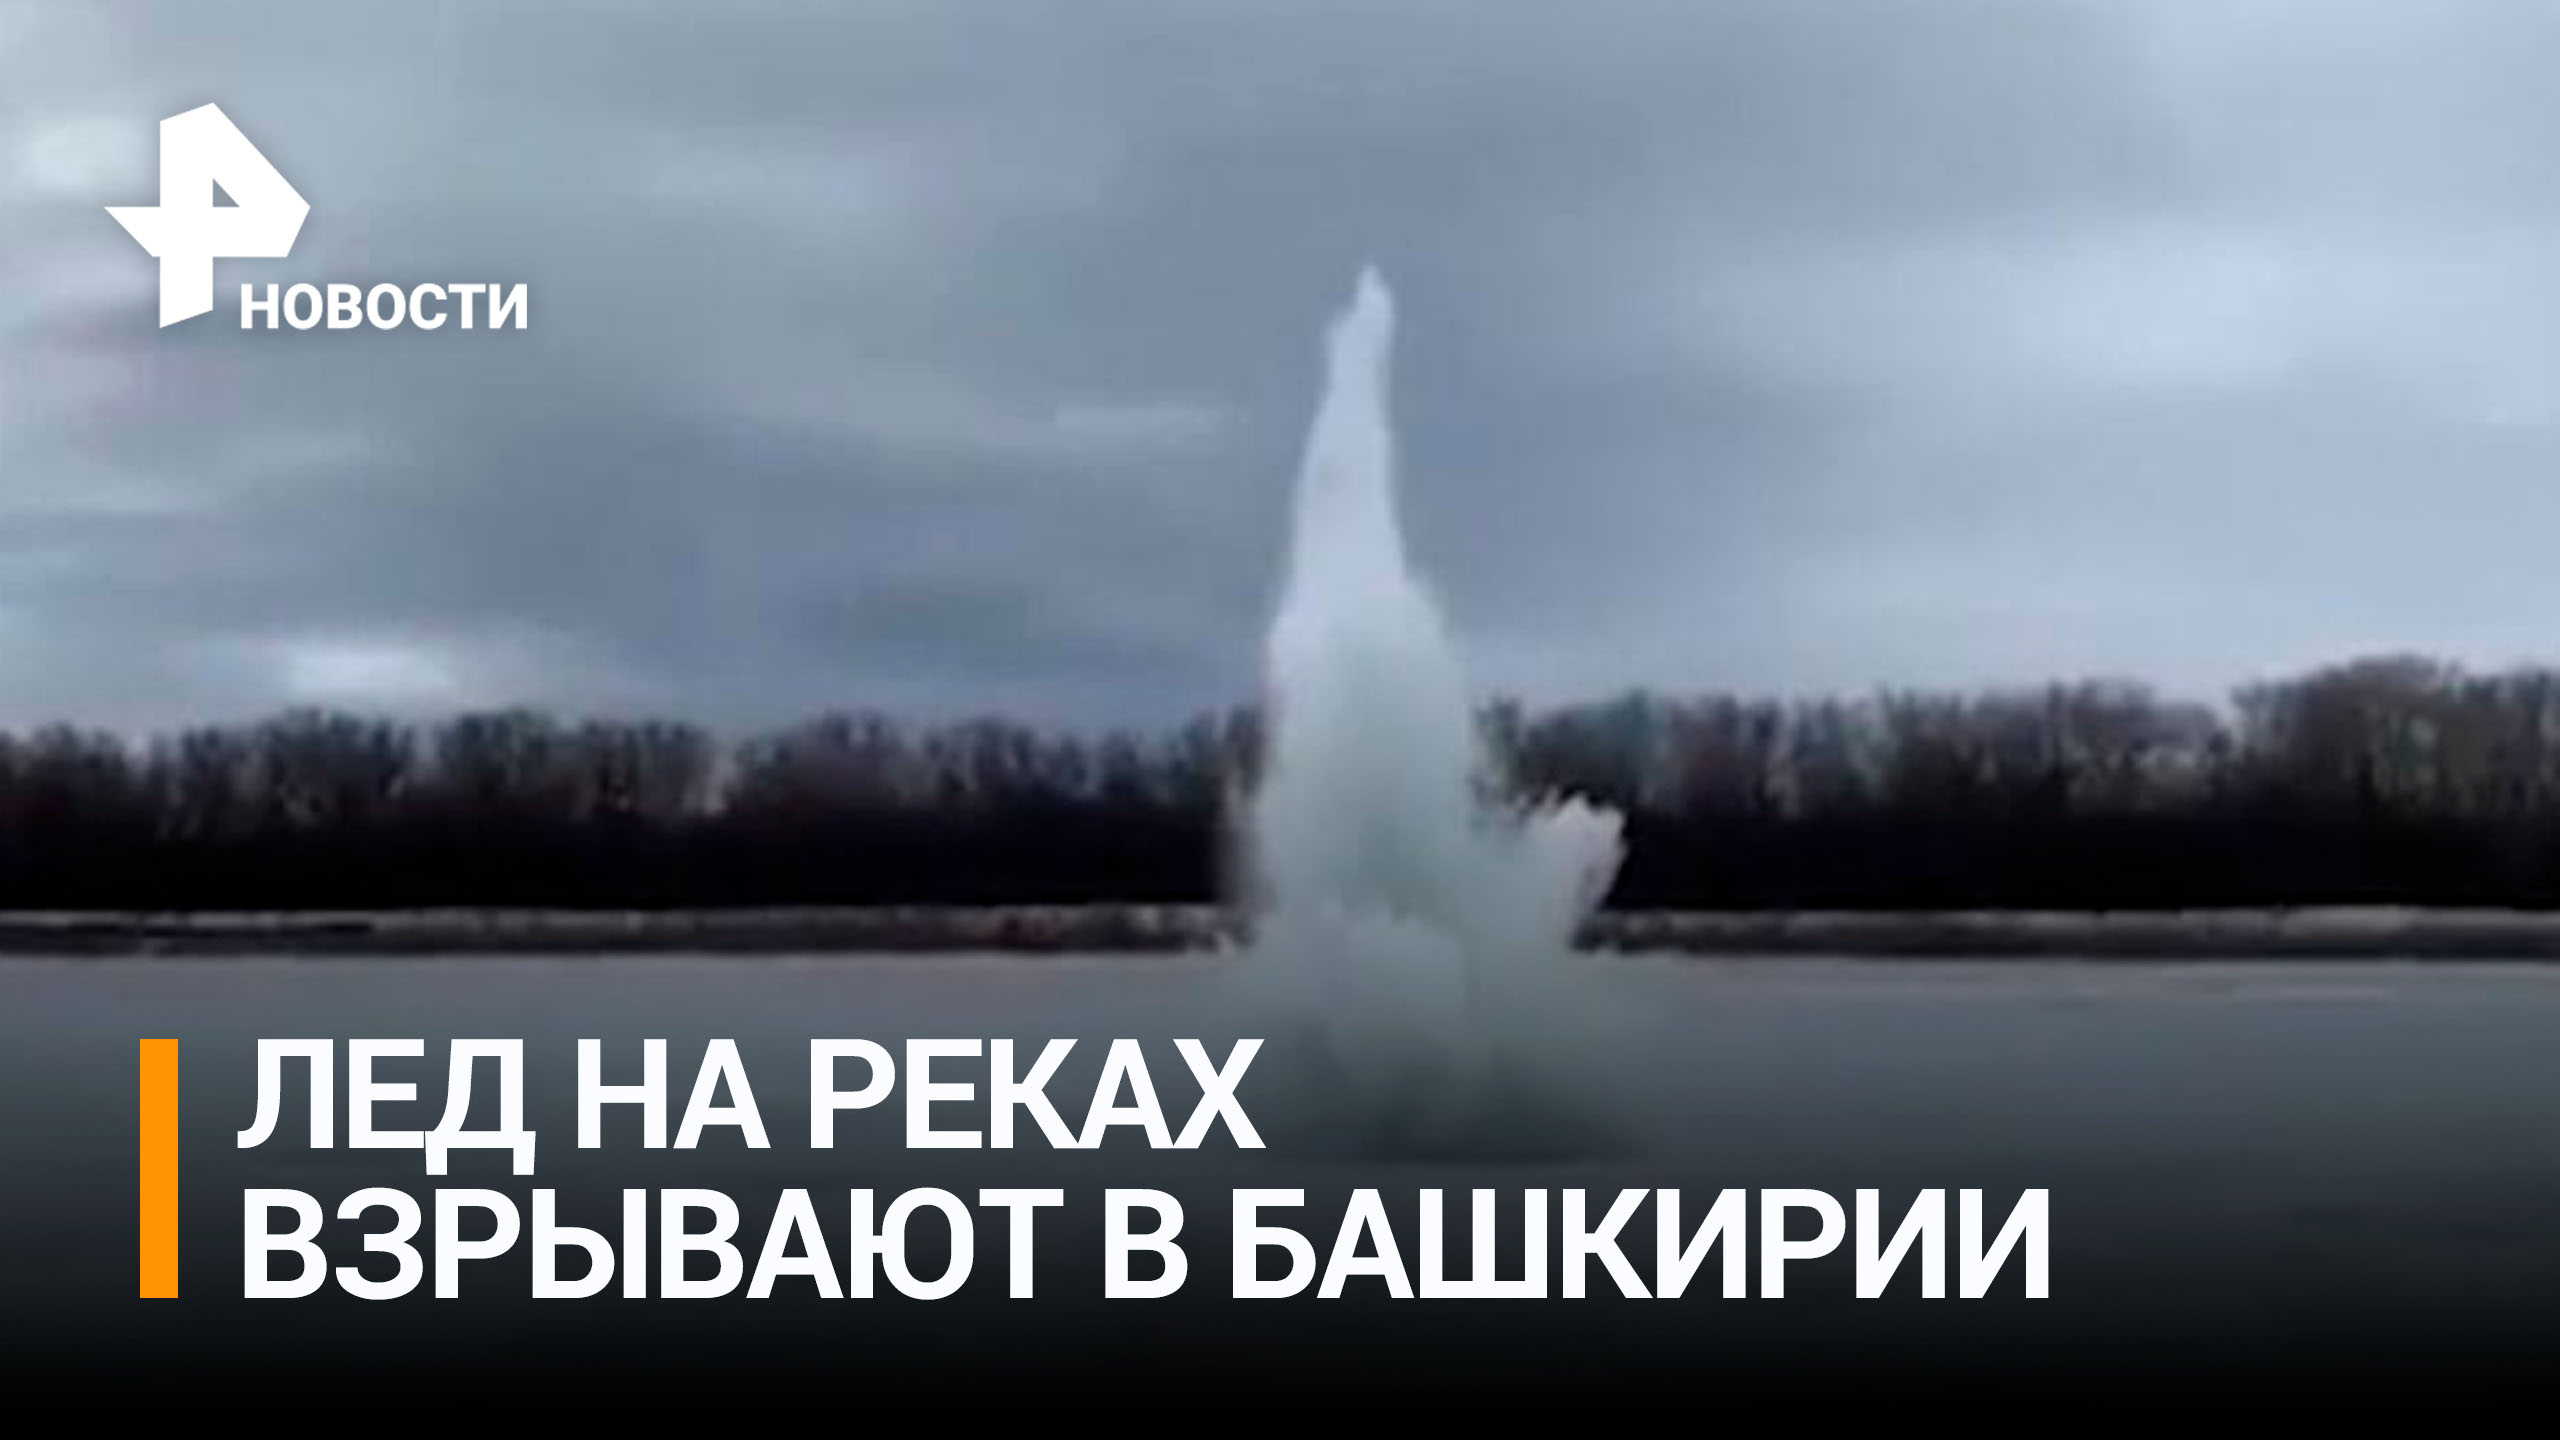 В Башкирии взрывают лед на реках, чтобы предотвратить паводки / РЕН Новости